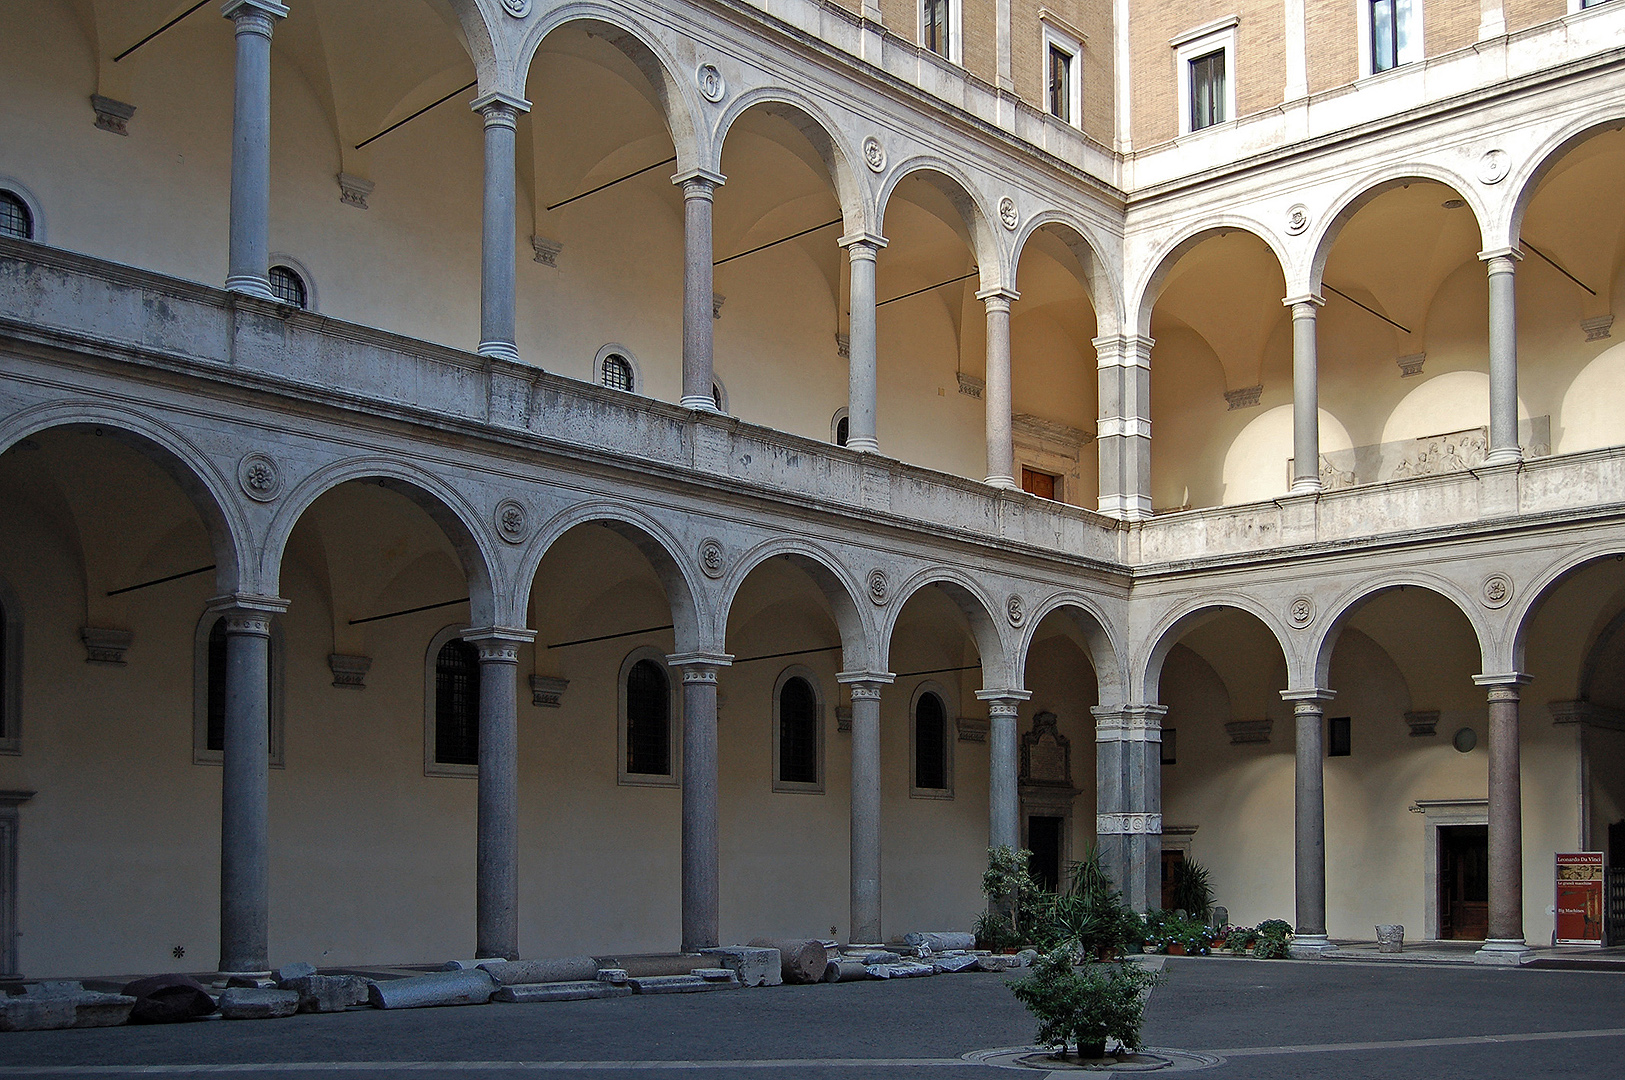 Palazzo della Cancelleria, Rome, Itali., Palazzo della Cancelleria, Rome, Italy.